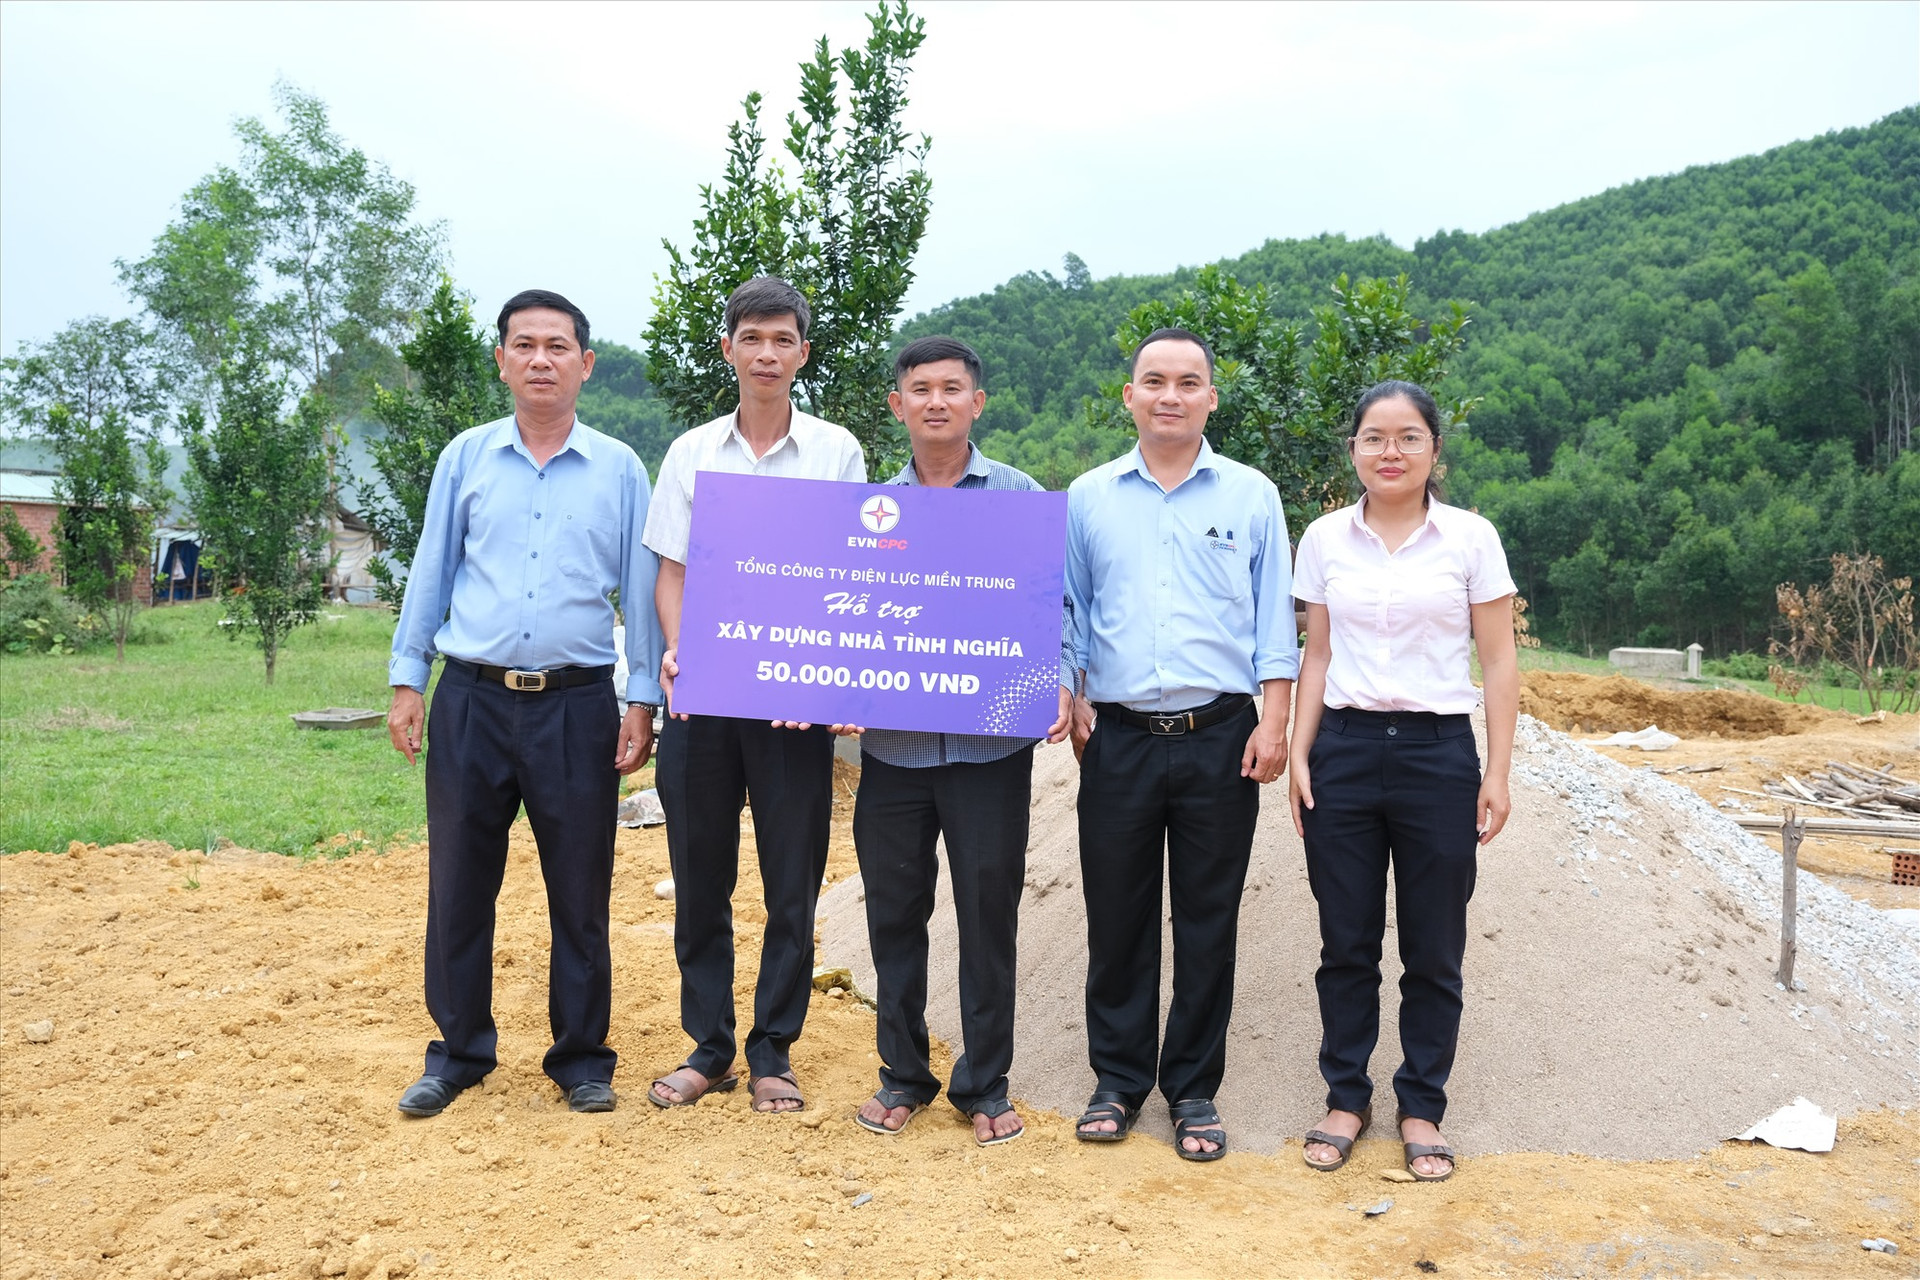 Đại diện công ty Điện lực Quảng Nam trao số tiền ủng hộ cho gia đình ông Nguyễn Văn Danh (Hiệp Đức) tại lễ khởi công xây dựng nhà tình nghĩa. Ảnh: H.P